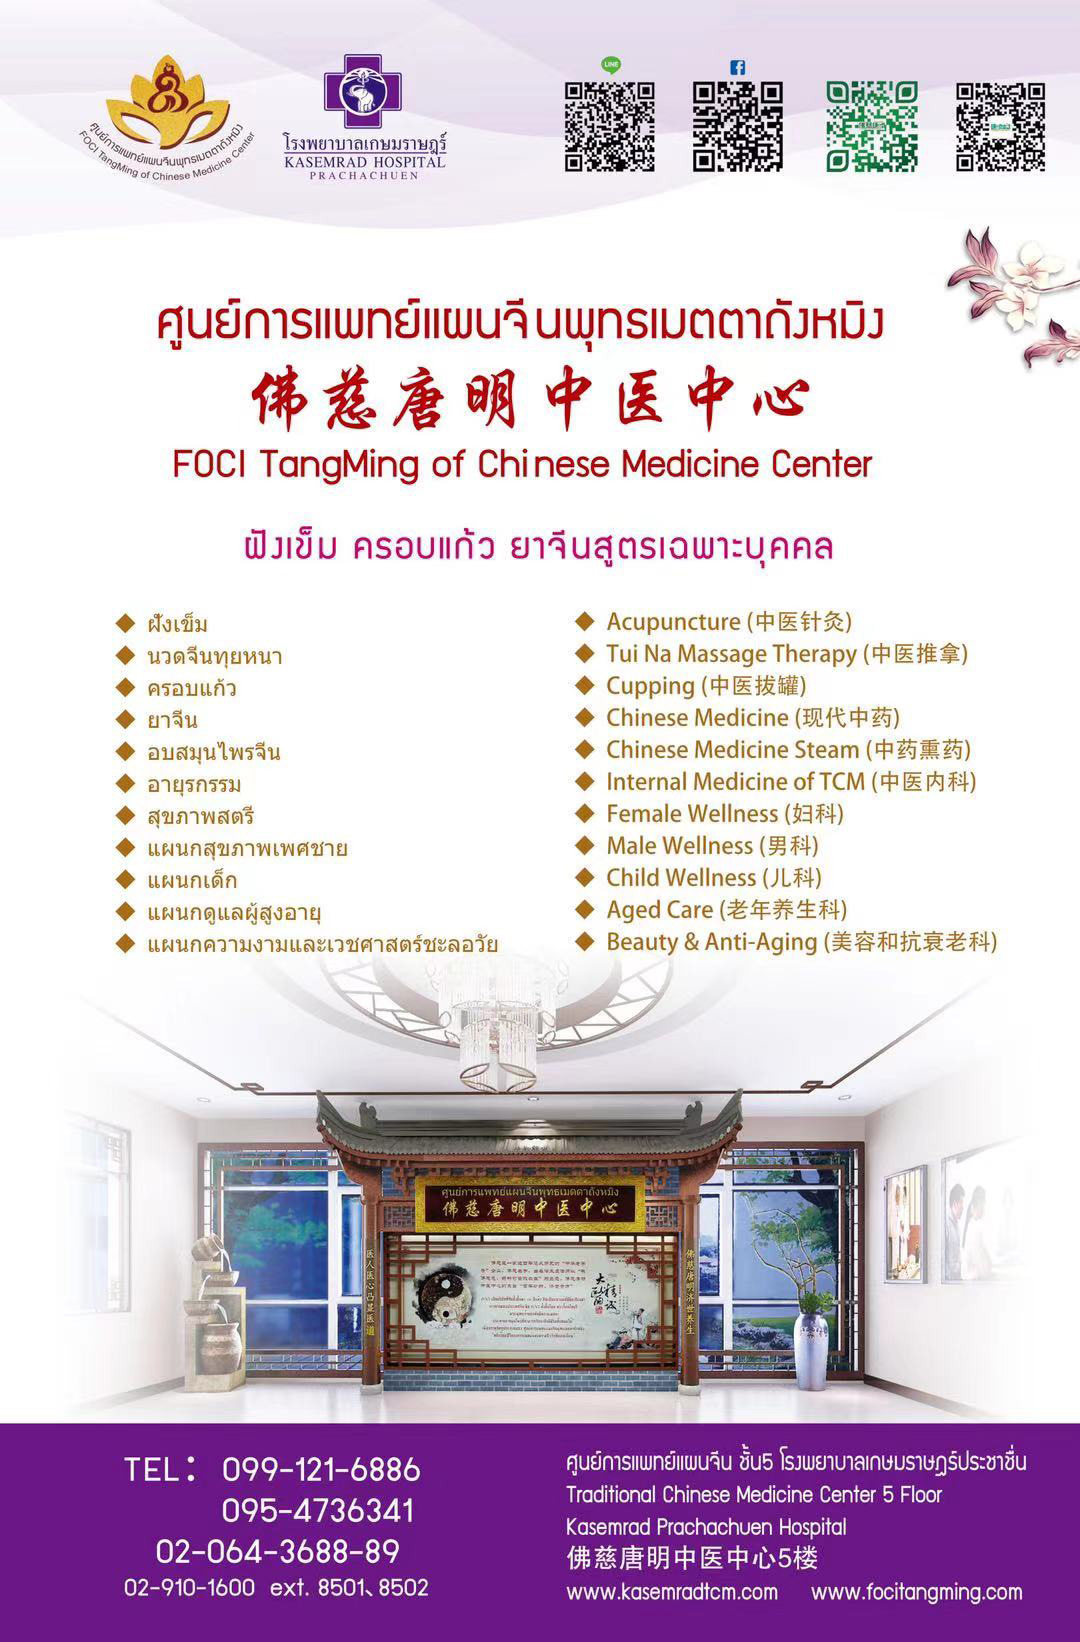 ศูนย์แพทย์แผนจีน รพ.เกษมราษฏร์ ศูนย์การแพทย์แผนจีนพุทธเมตตาถังหมิง 佛慈唐明中医中心 FOCI TangMing of Chinese Medicine Center